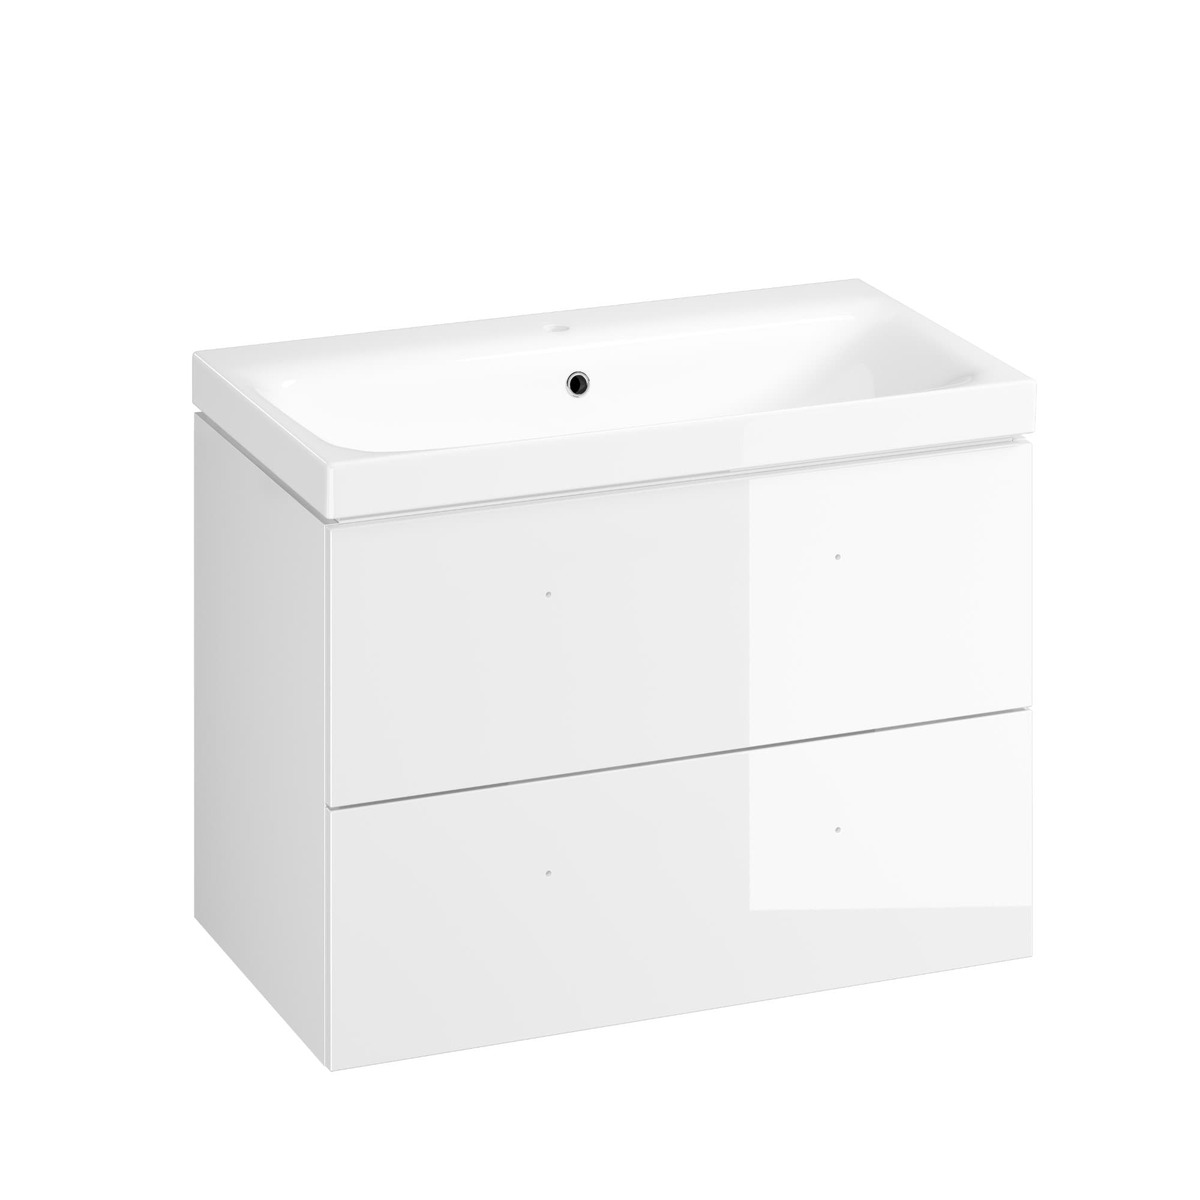 Koupelnová skříňka s umyvadlem Cersanit Medley 80x61.5x45 cm bílá lesk S801-351-DSM Cersanit